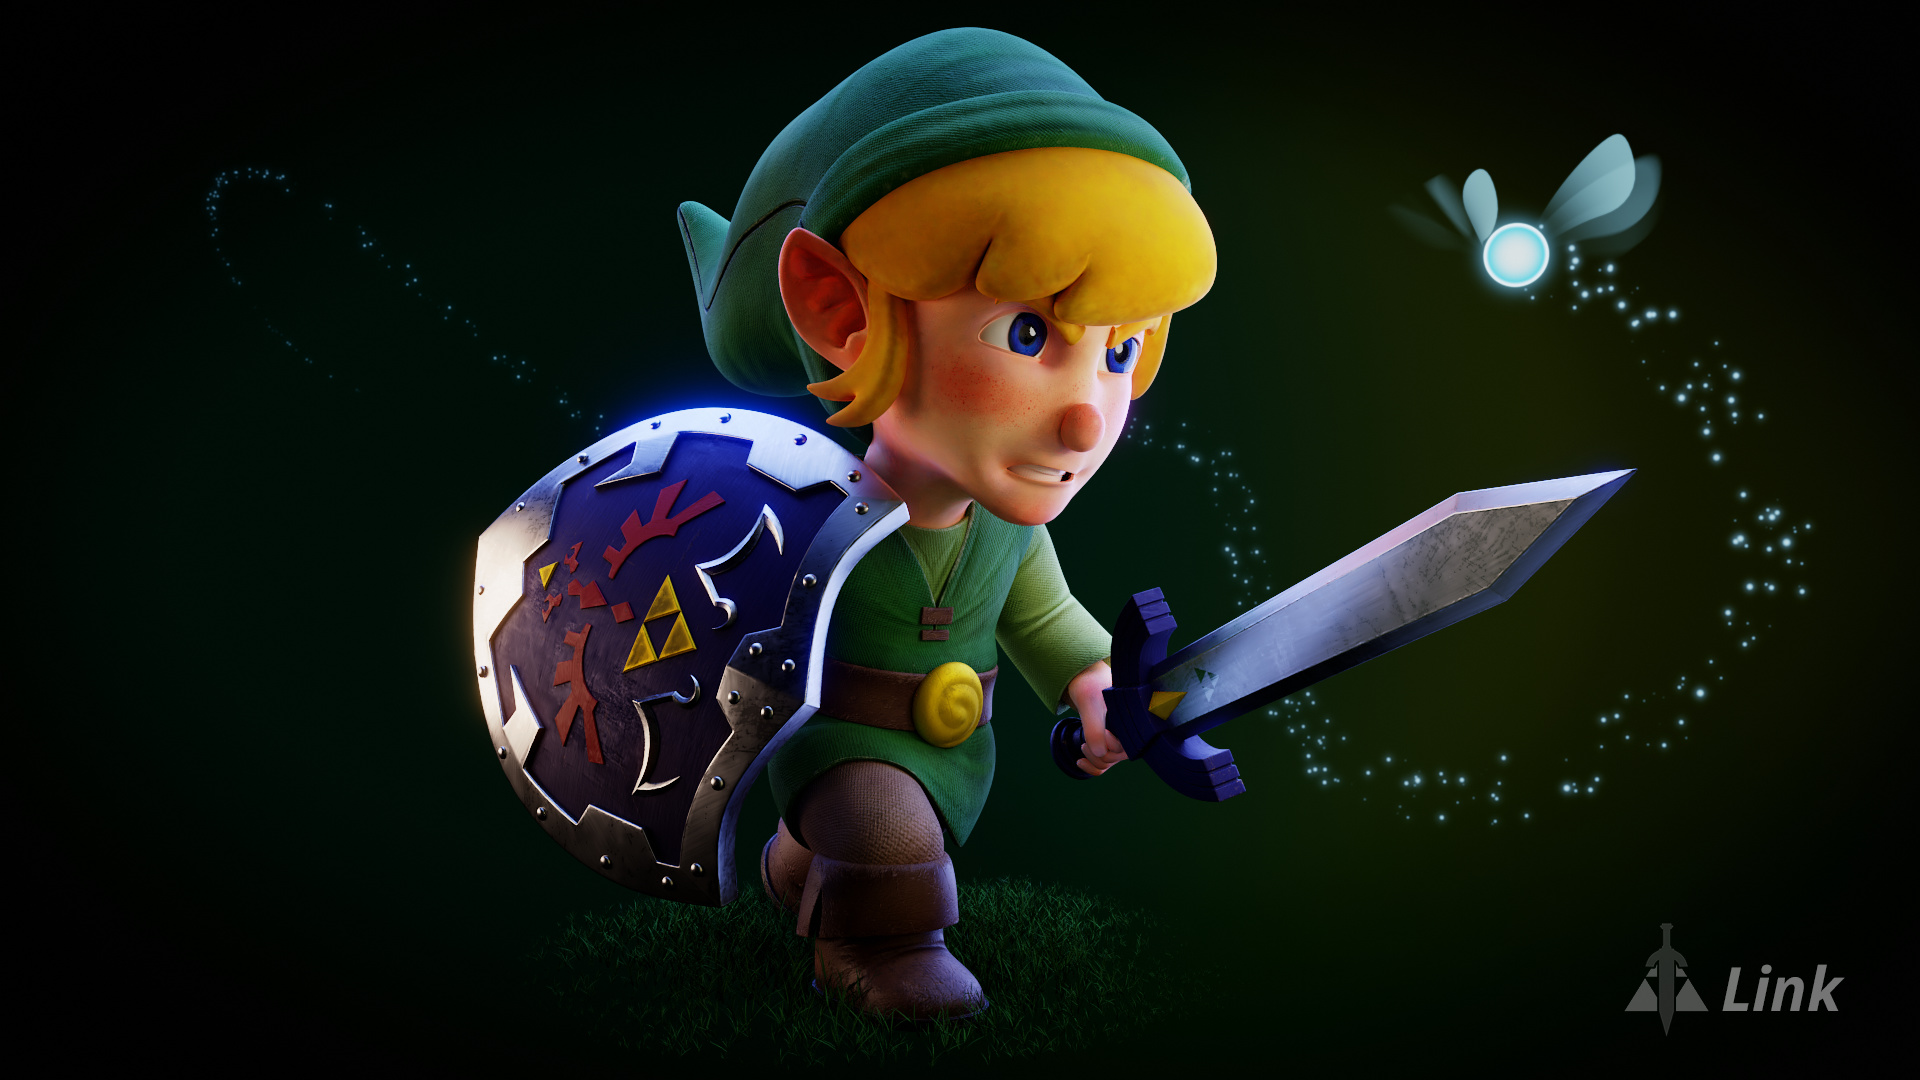 Link' in 'The Legend of Zelda.' fan art by painterhoya on DeviantArt